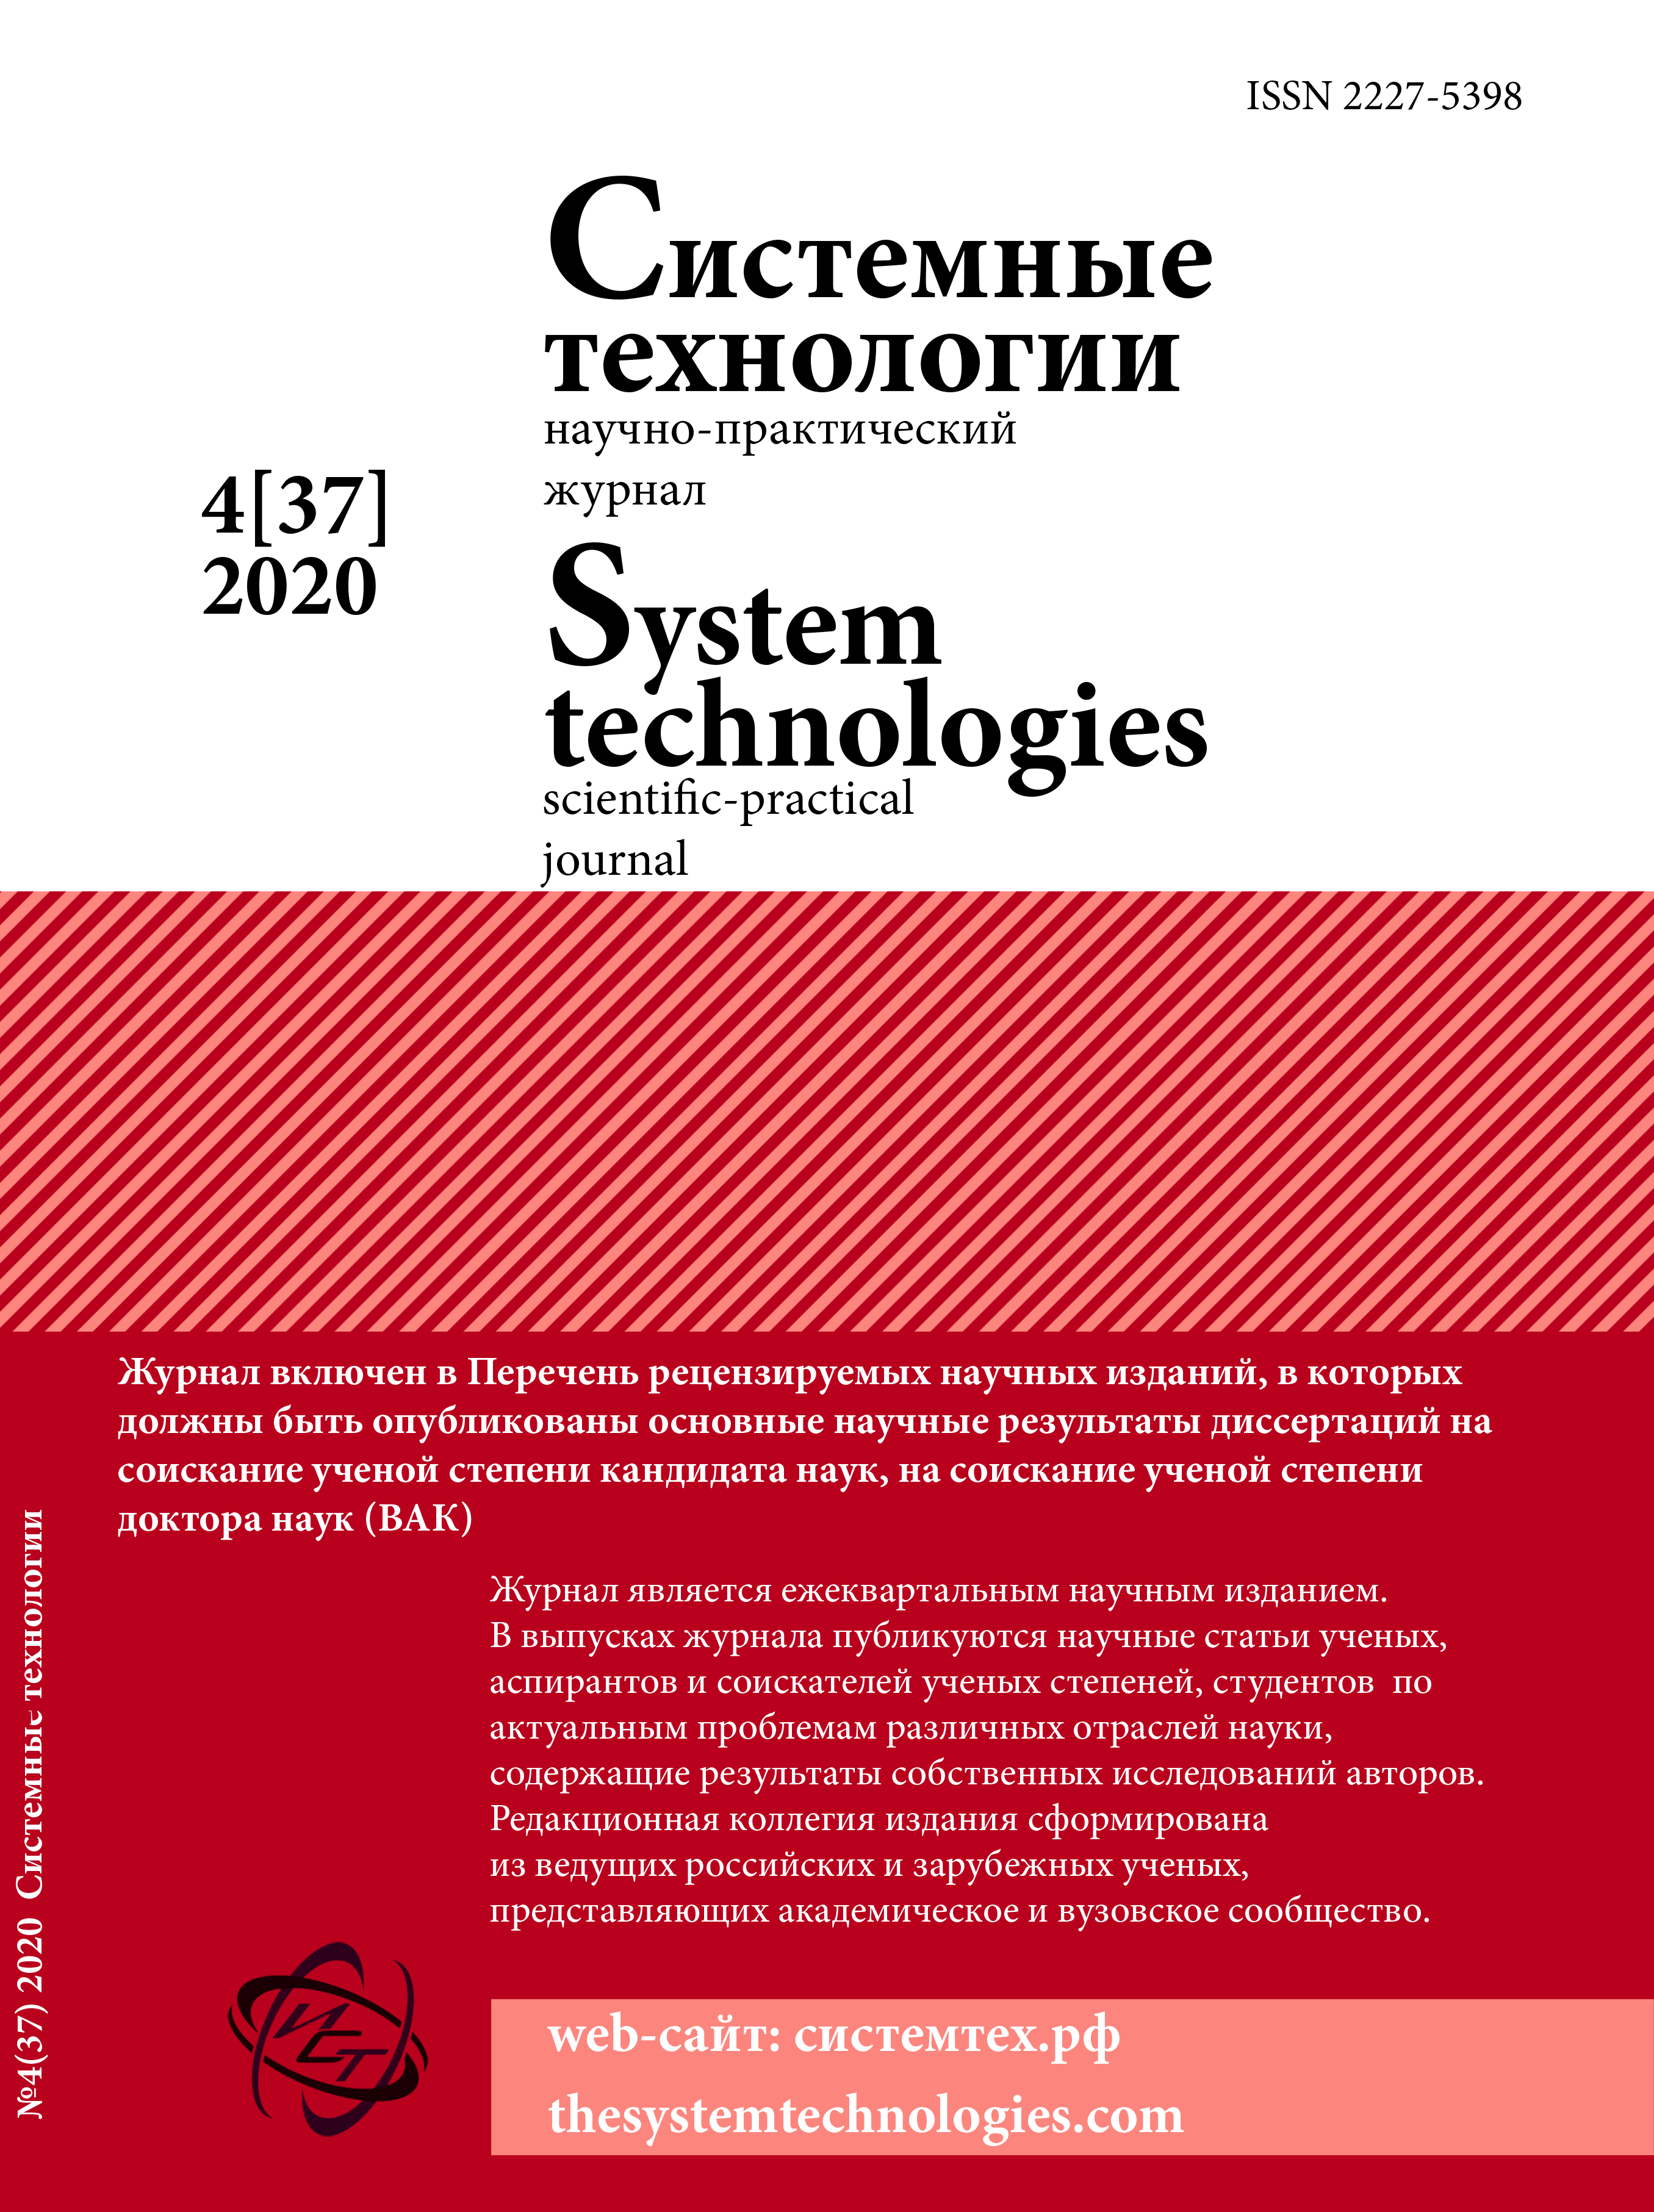 					View No. 37 (2020): Системные технологии 4(37)
				